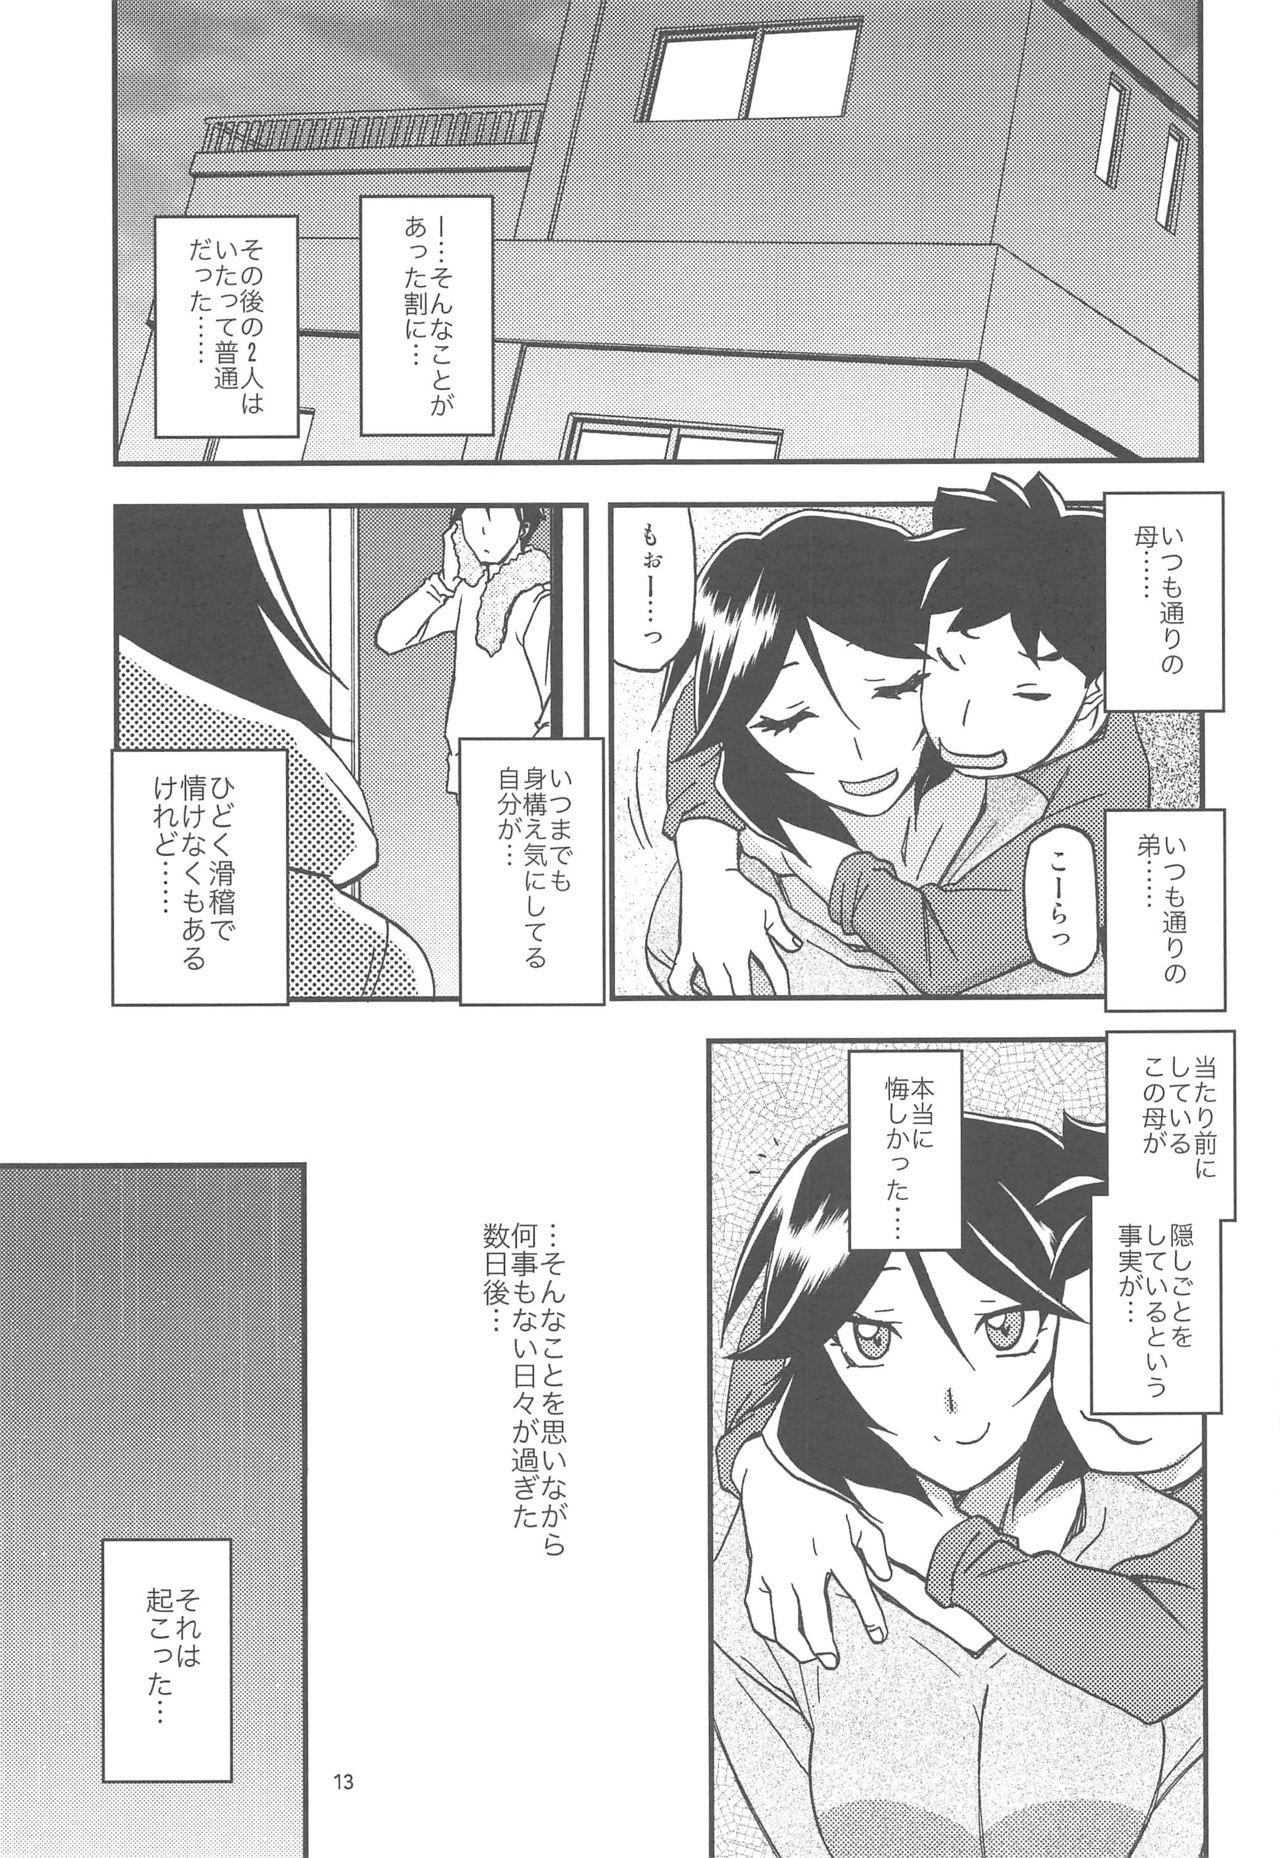 Creamy Akebi no Mi - Fumiko AFTER - Akebi no mi Peludo - Page 13